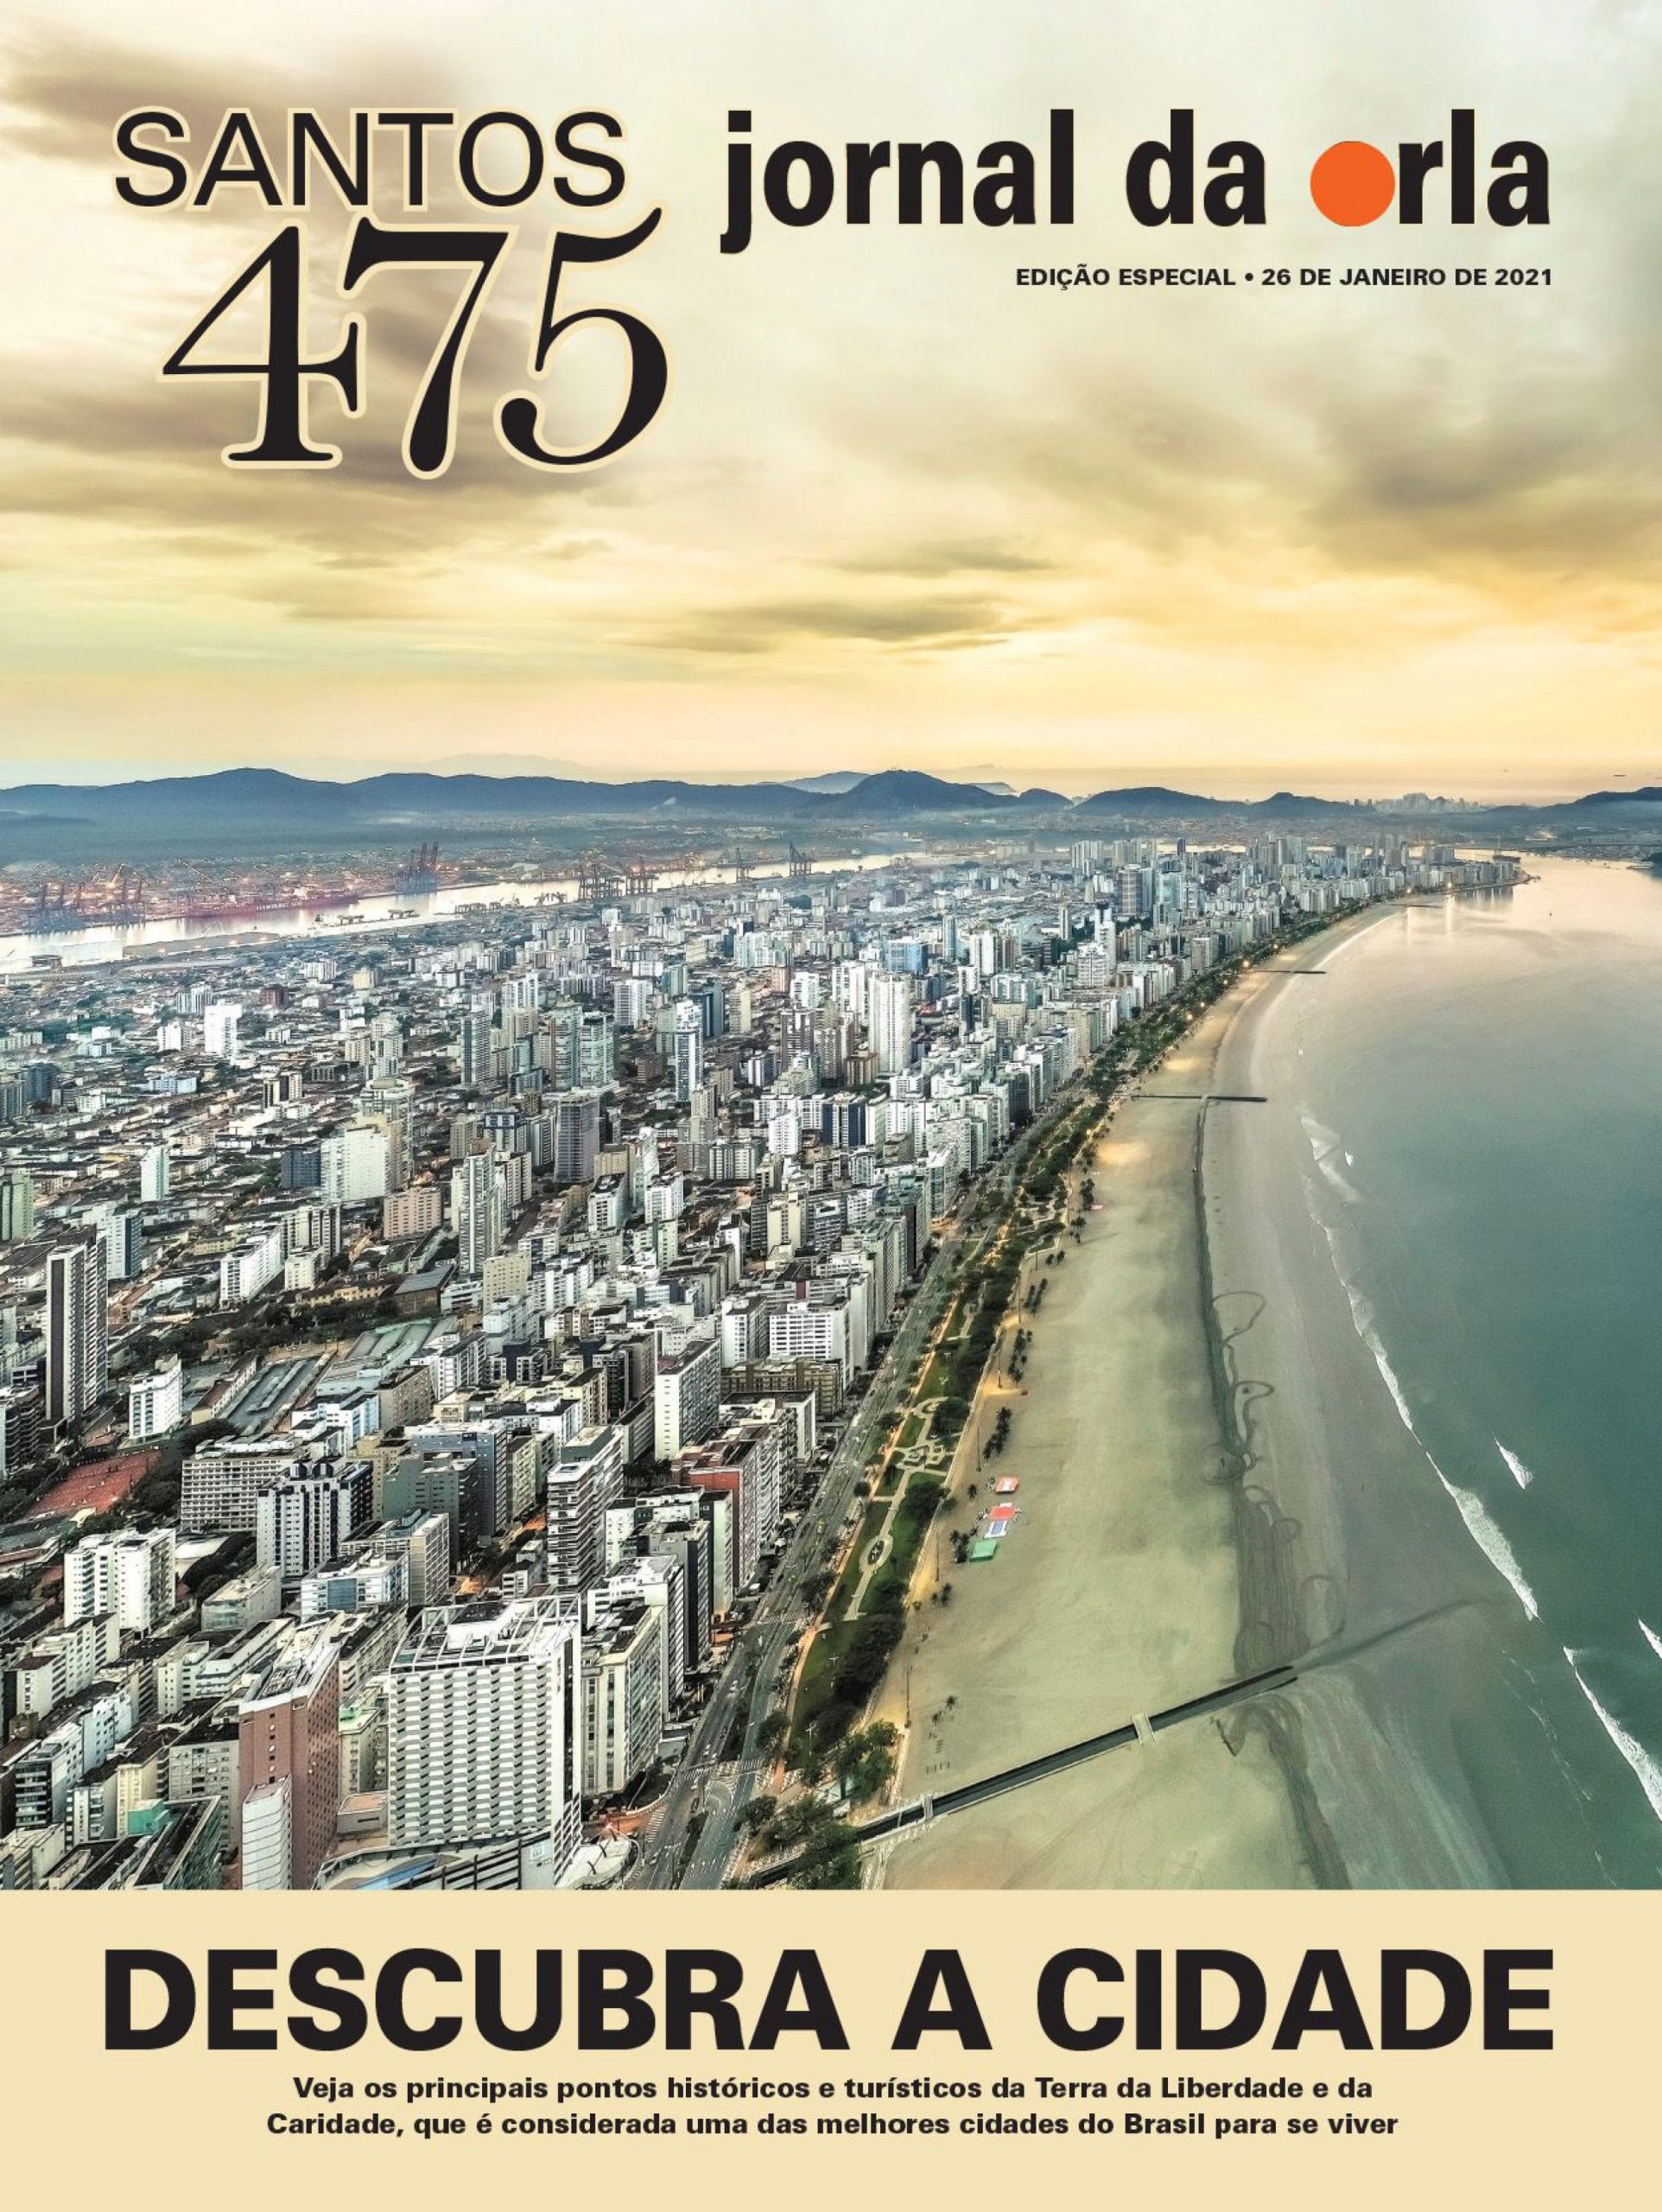 Santos, 475 anos | Jornal da Orla